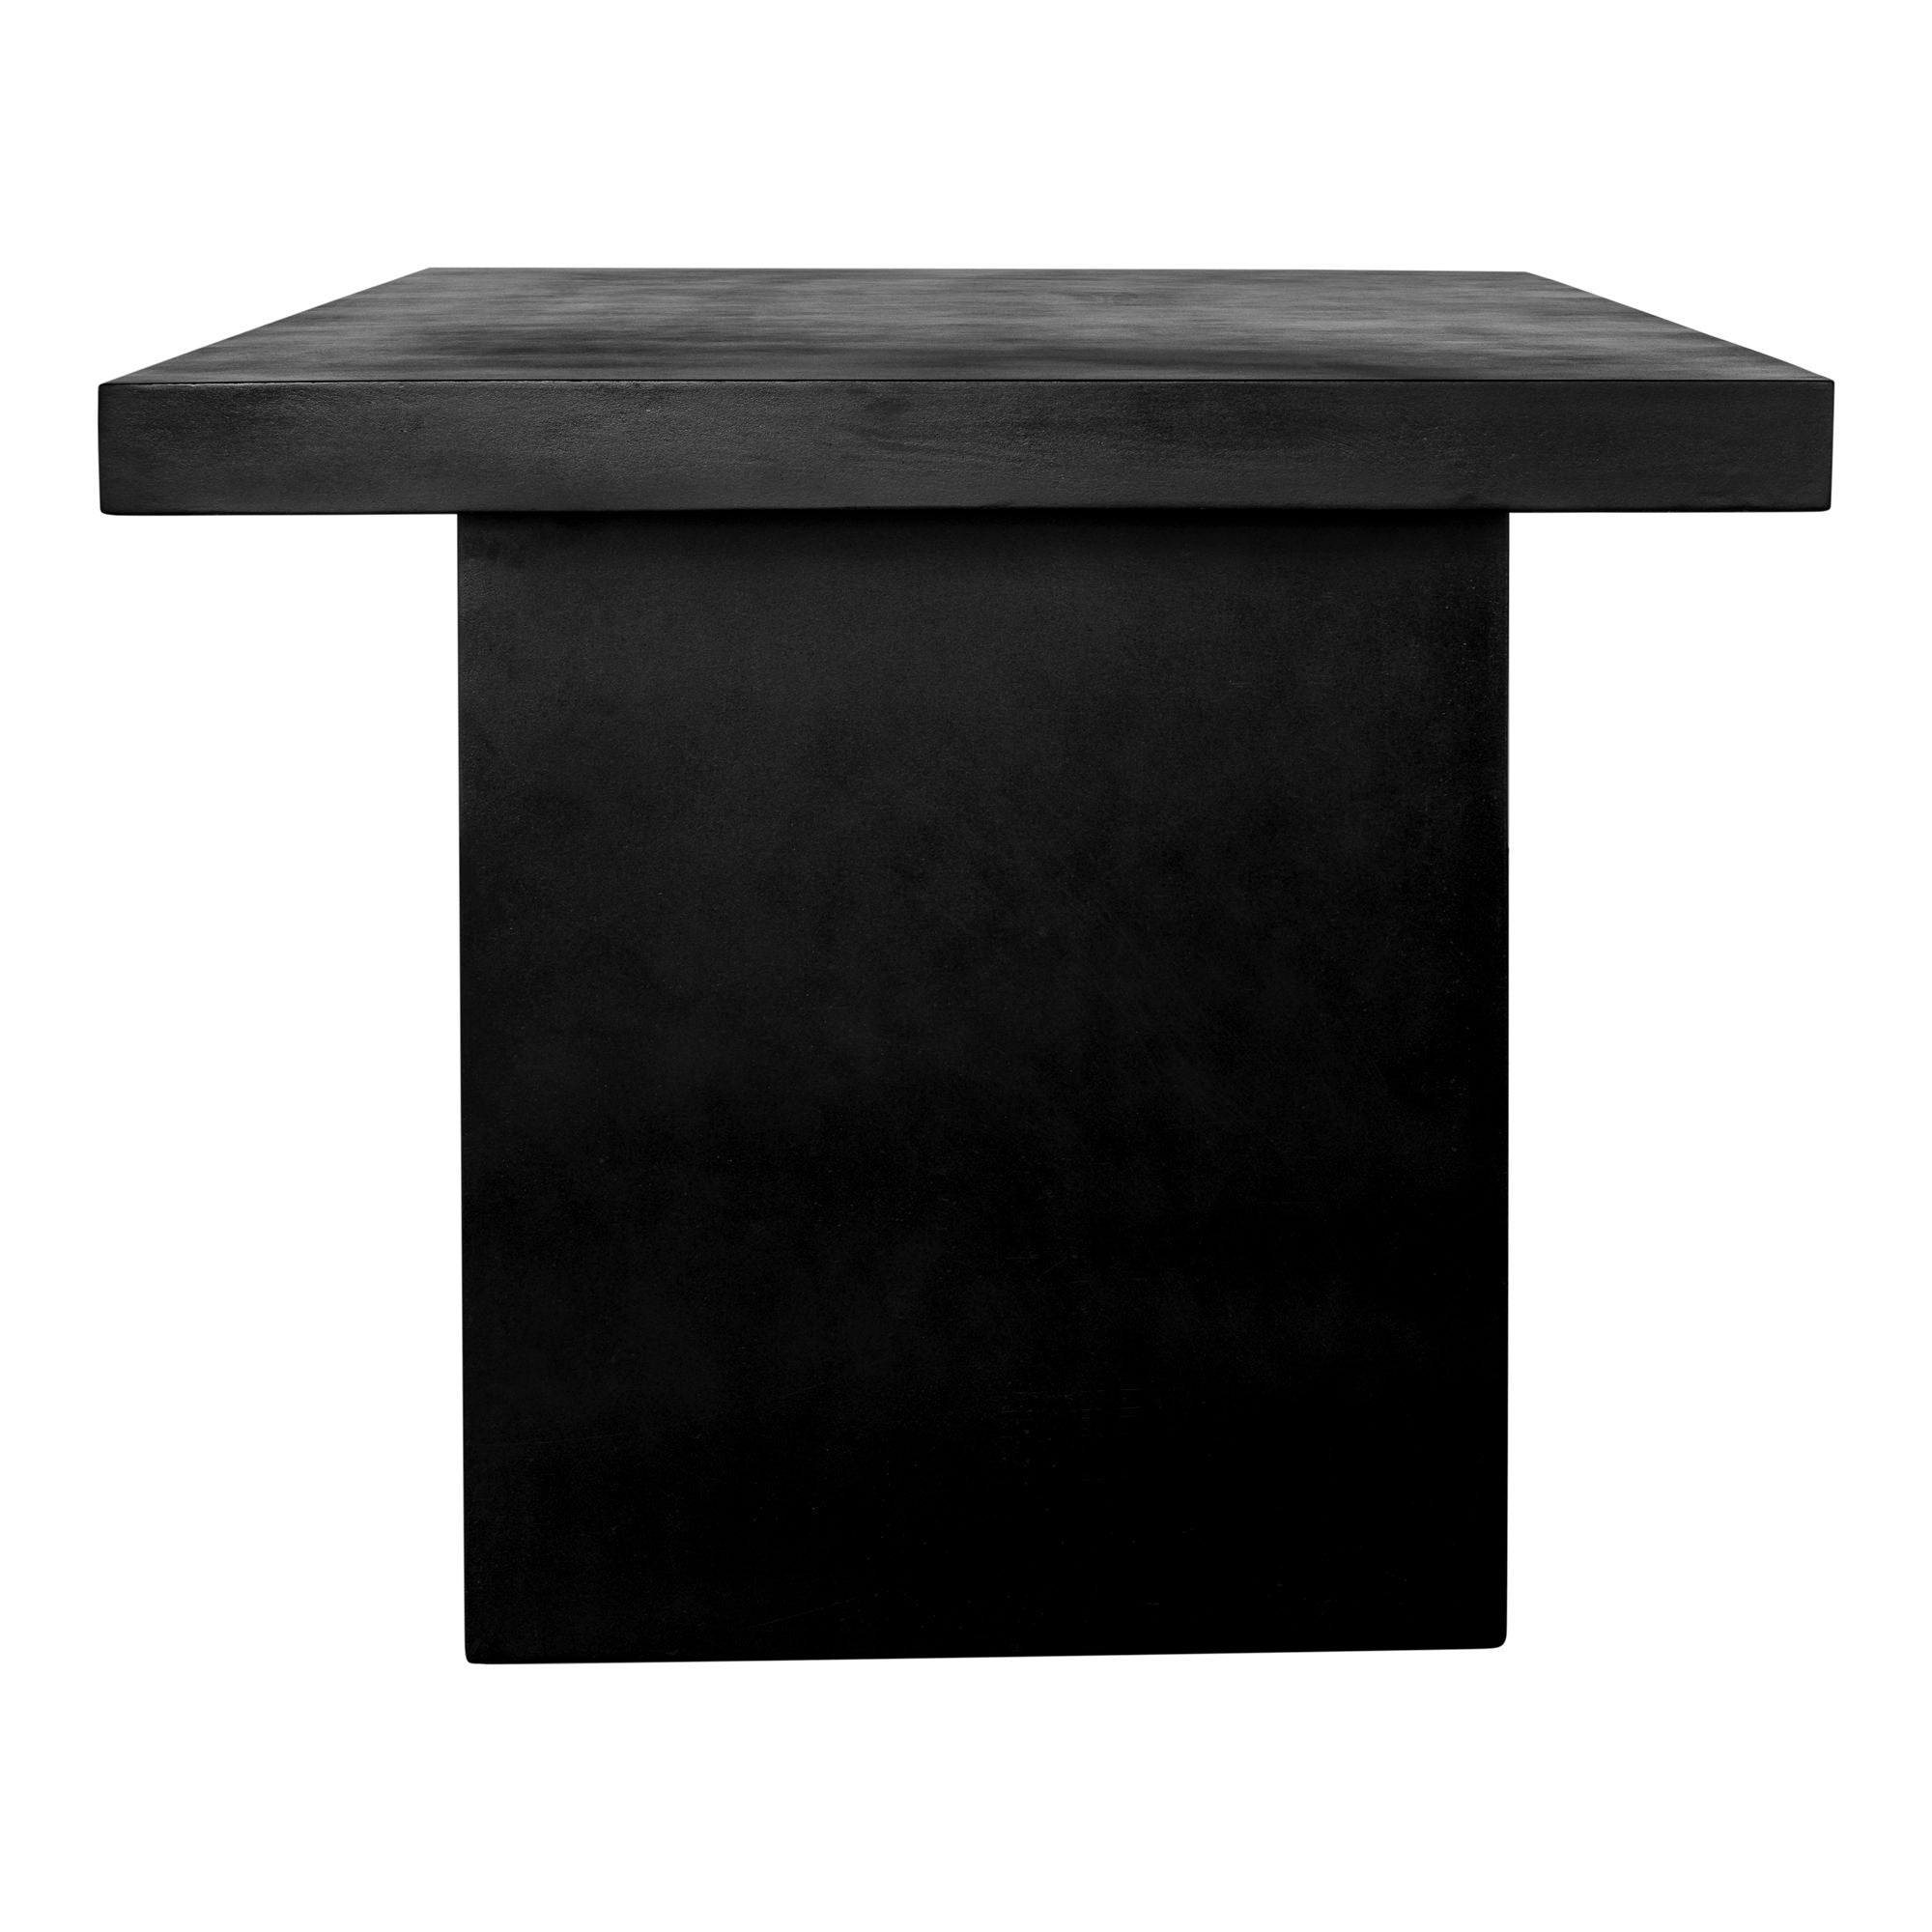 Aurelius - 2 Outdoor Dining Table - Black - Concrete